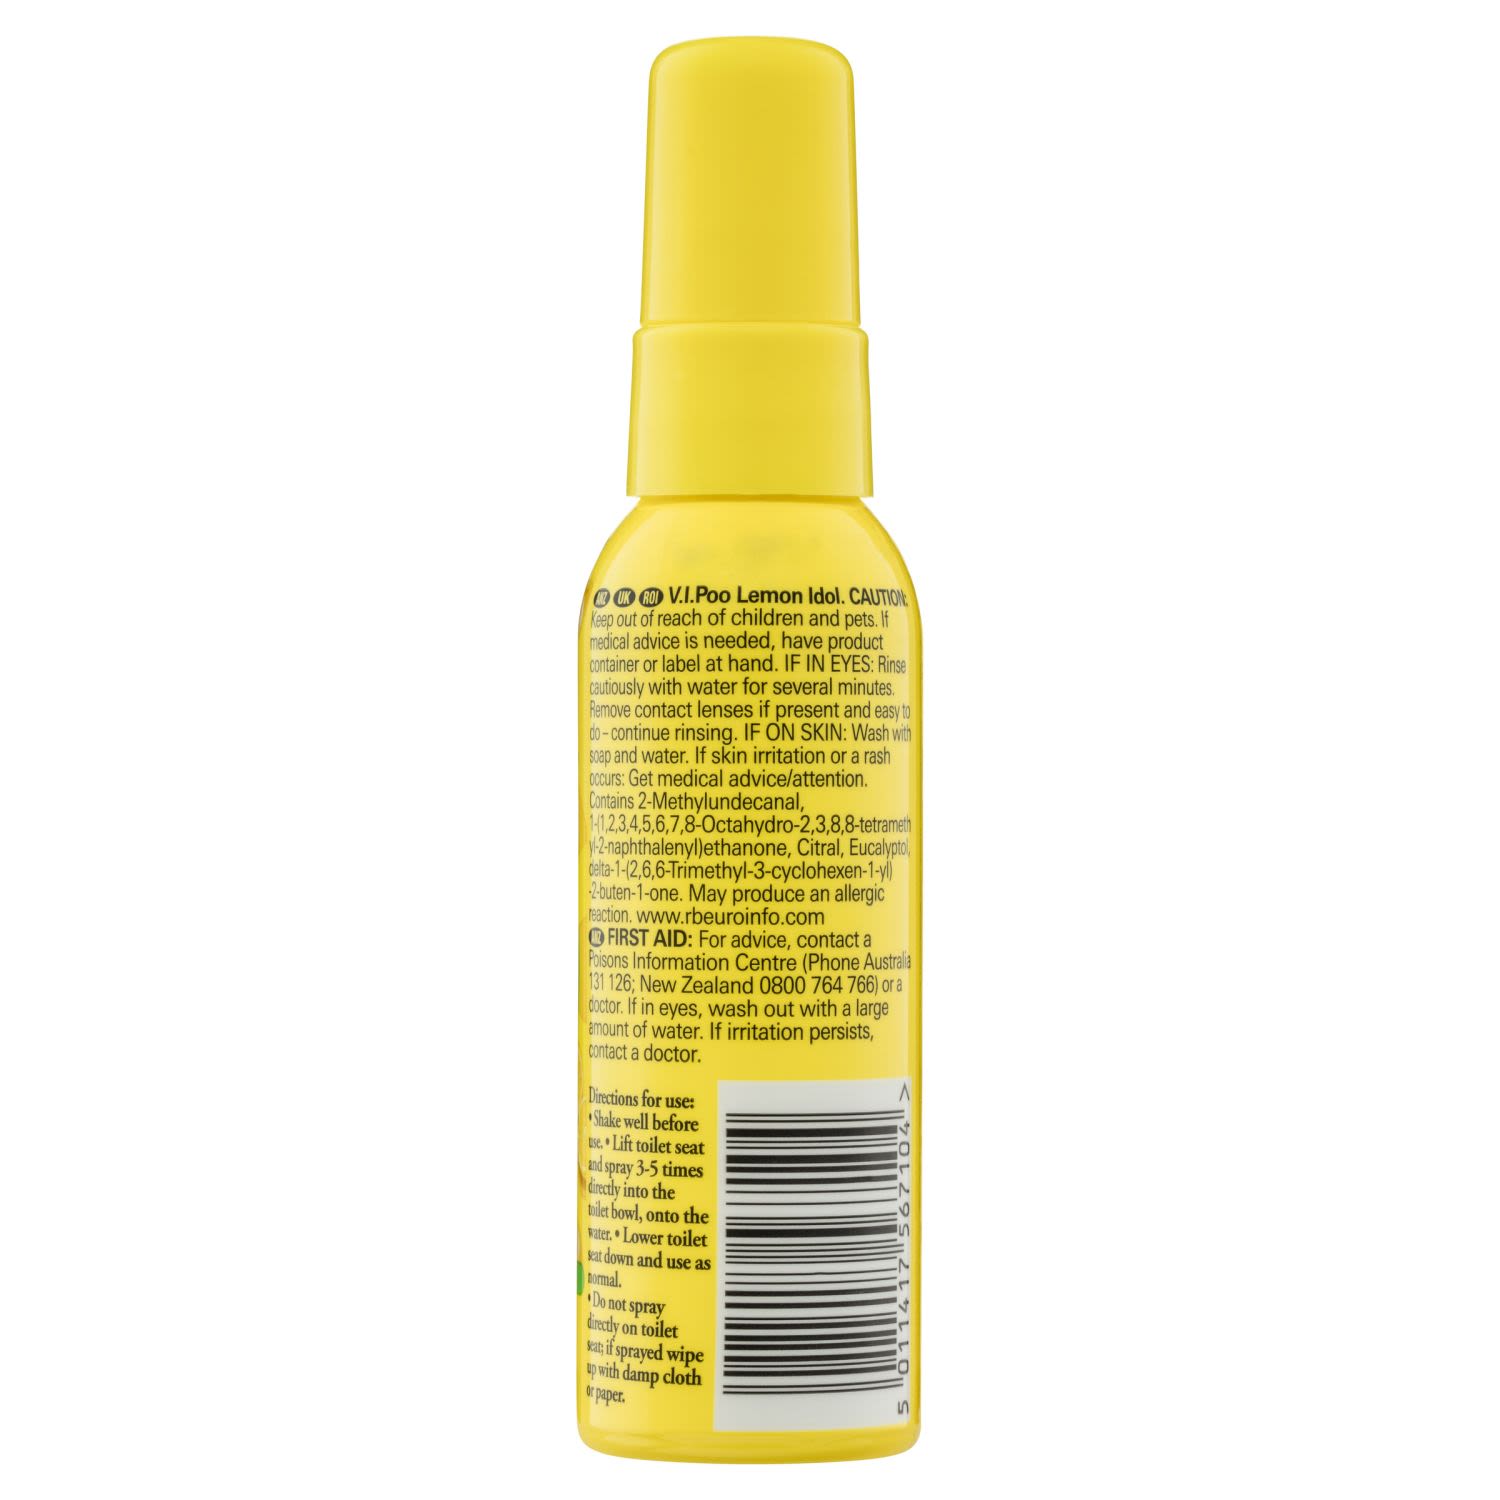 Air Wick VIPOO Toilet Perfume Spray, Lemon Idol, Pre-Poop Spray - 55 ml